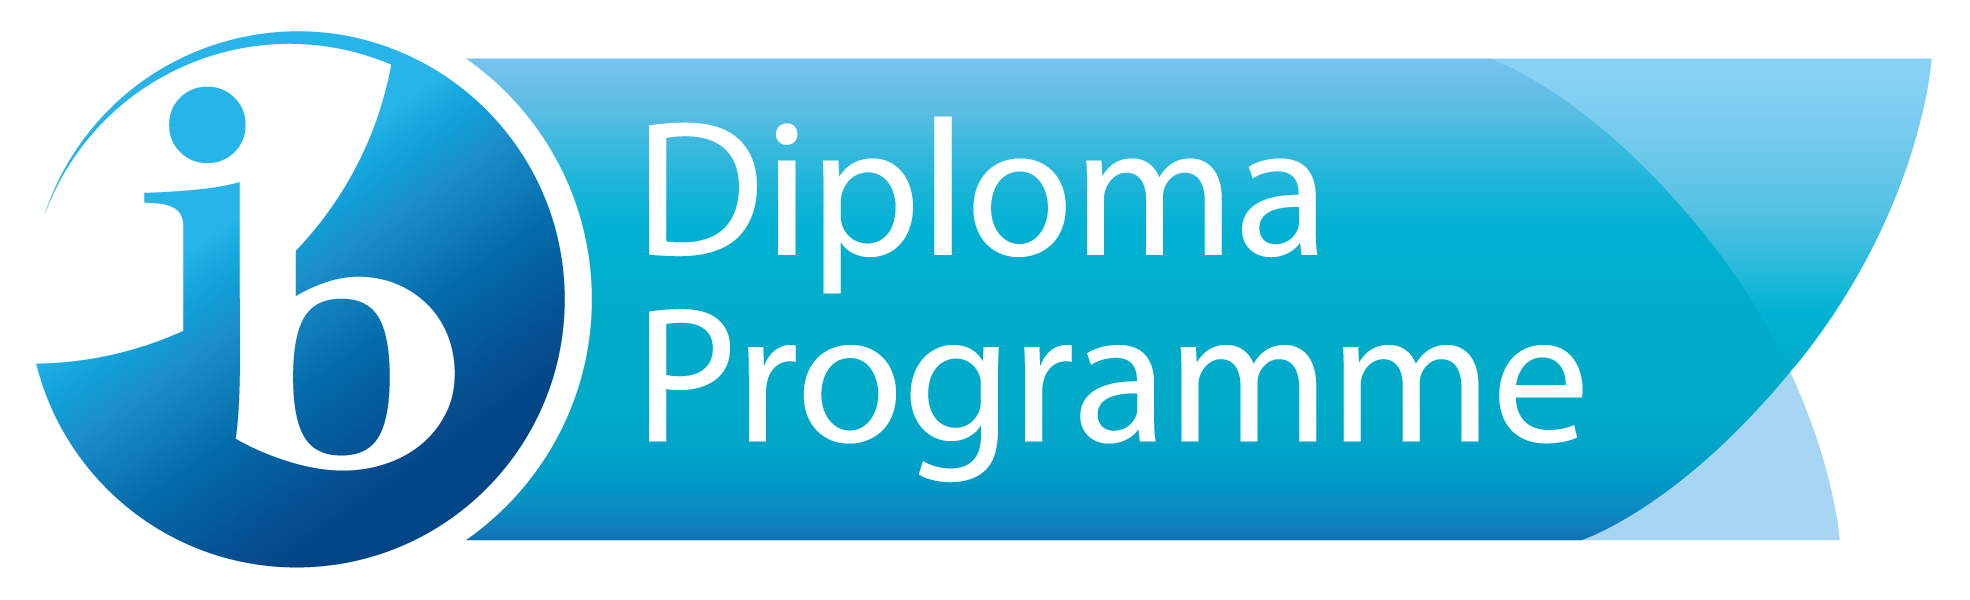 IB diploma programme - Klikk for stort bilde